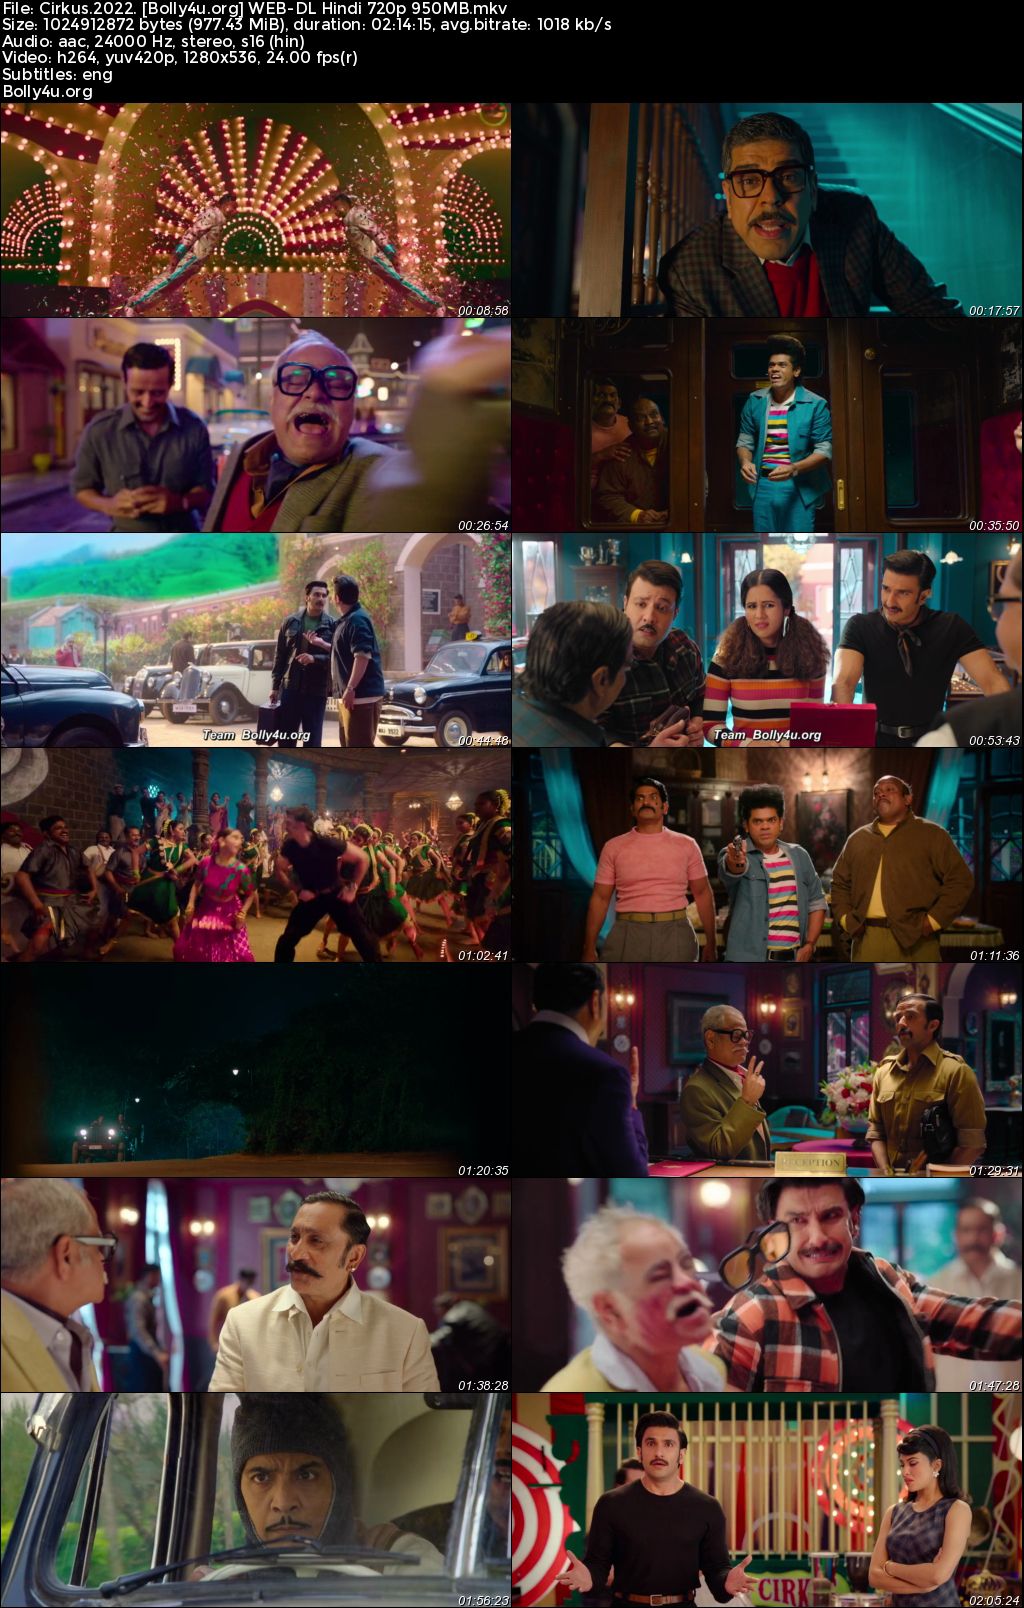 Cirkus 2022 WEB-DL Hindi Full Movie Download 1080p 720p 480p